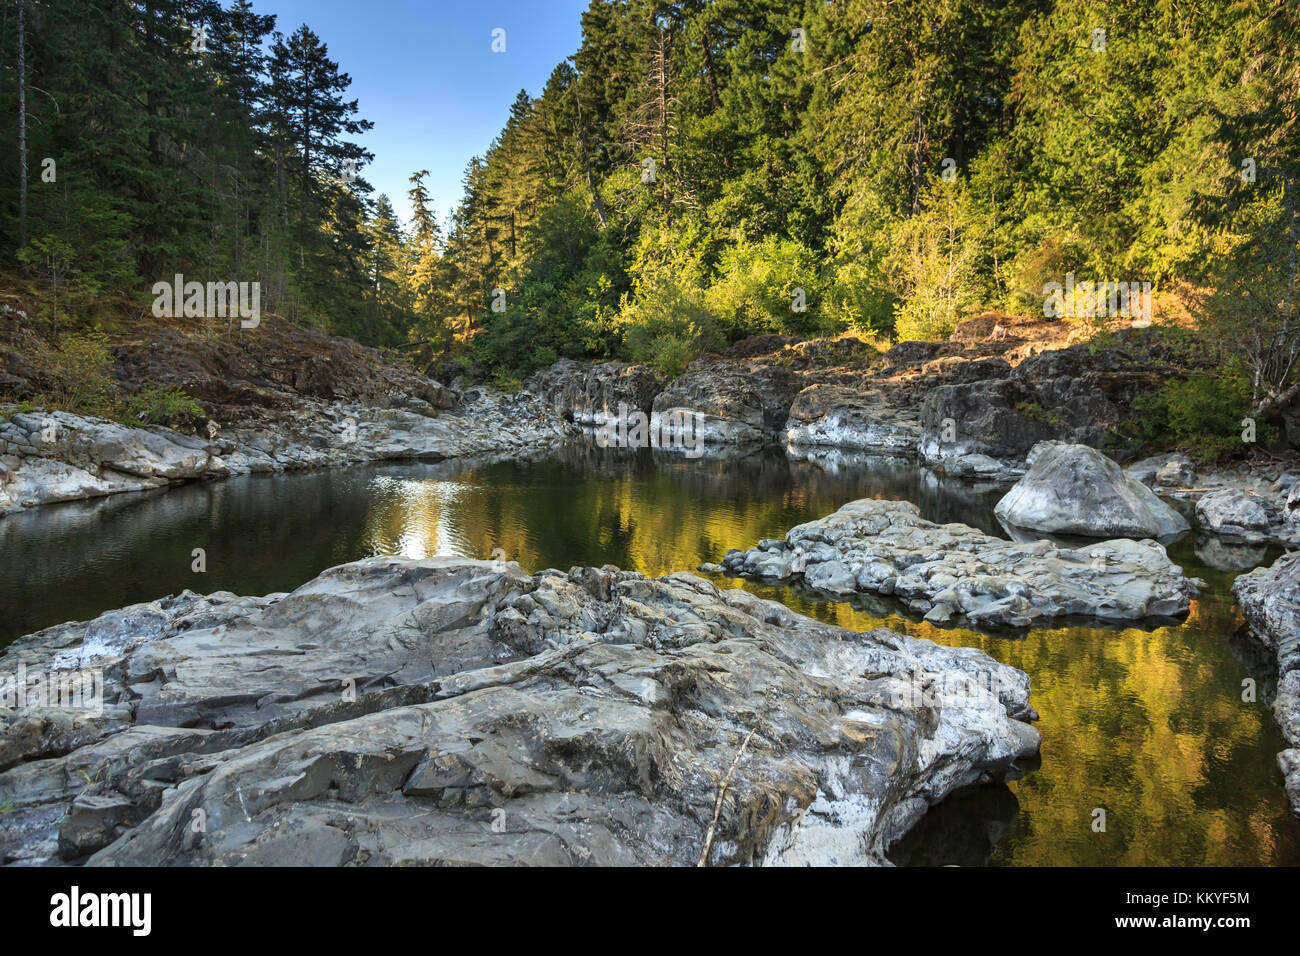 Site sur galluping Goose Trail, rivière Sooke, Sooke Potholes Provincial Park, près de Sooke, île de Vancouver, Colombie-Britannique, Canada Banque D'Images